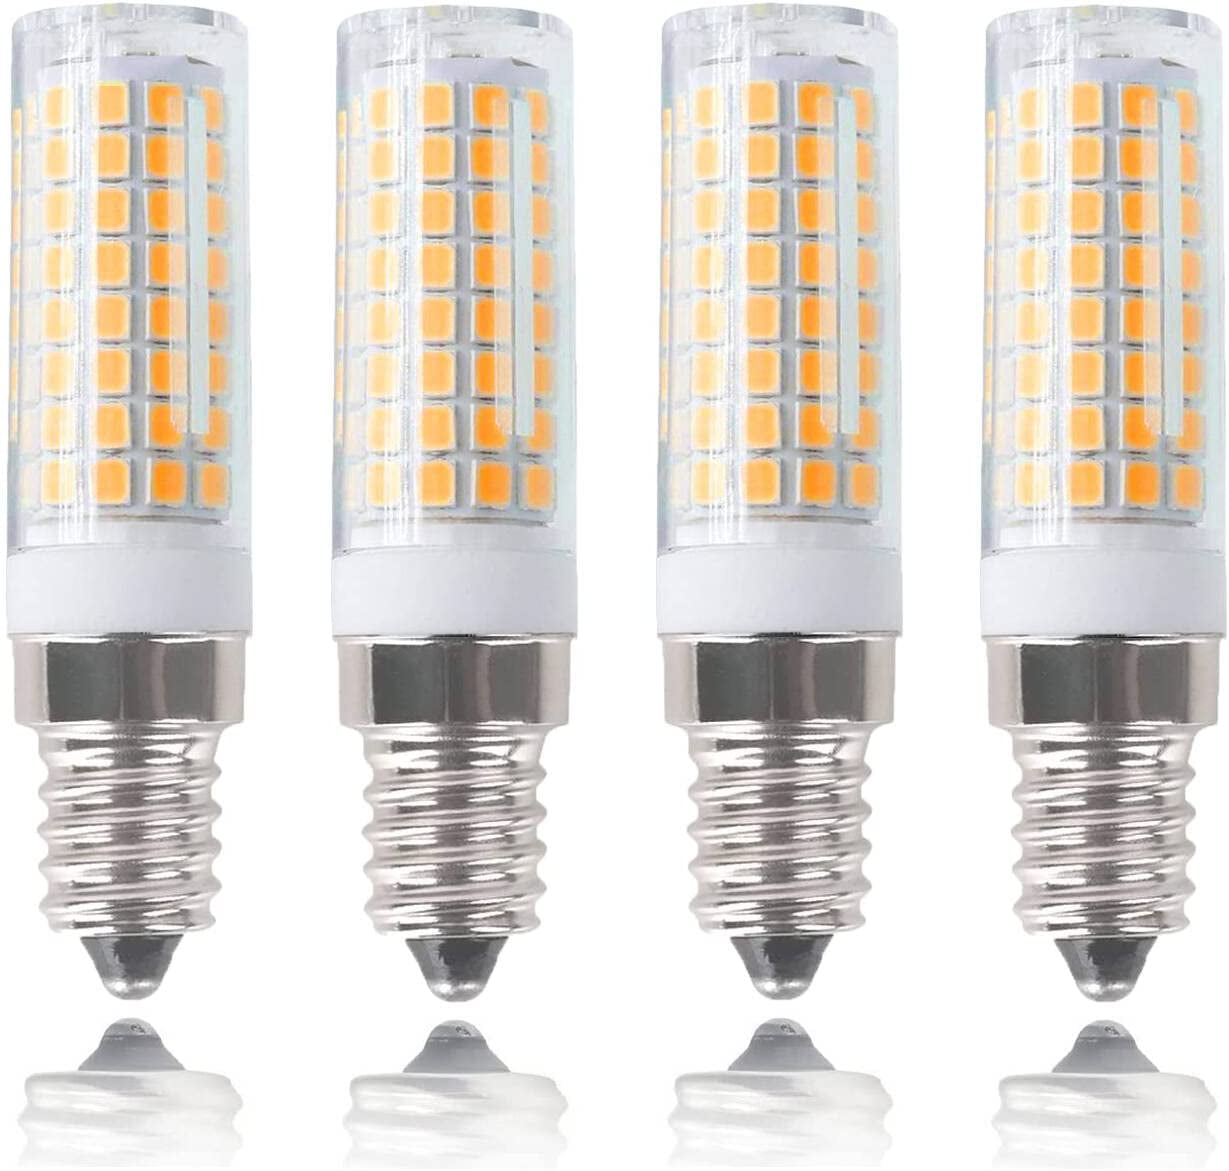 LED Bulb 120V Light Equivalent 75W Incandescent Bulb, Dimmable E14 Base for Cooker Hood Bulbs Turkish lamp Bulb, E14 Socket Light Bulb Warm White 3000K (4 Pack) -